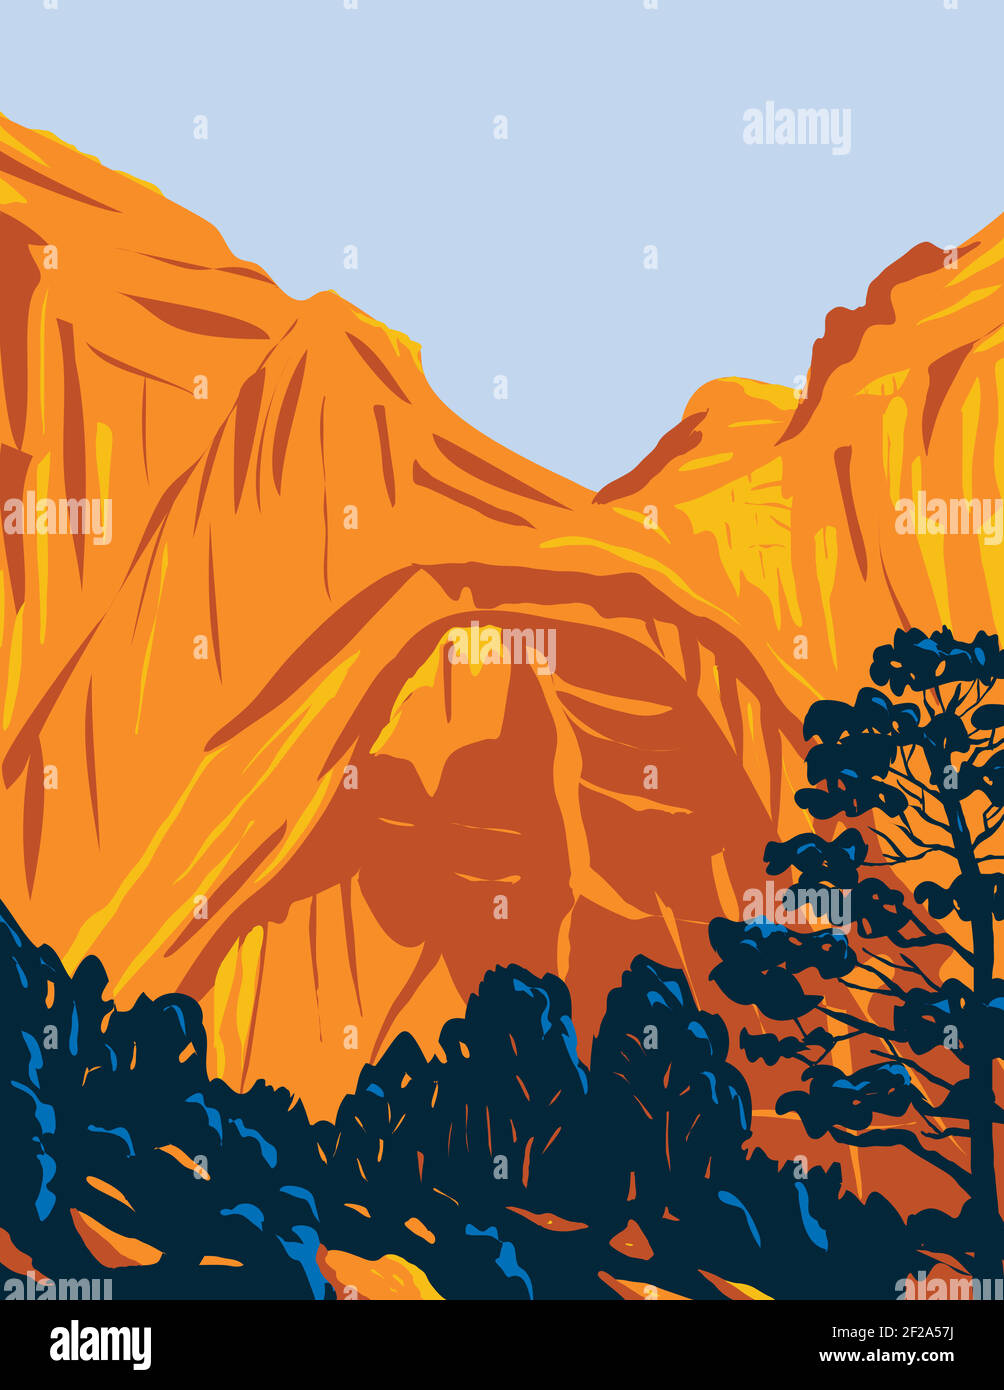 WPA Plakatkunst des El Malpais National Monument befindet Im westlichen New Mexico in der Arbeit Projekt-Verwaltung Stil getan Oder Bundeskunstprojekt sty Stock Vektor